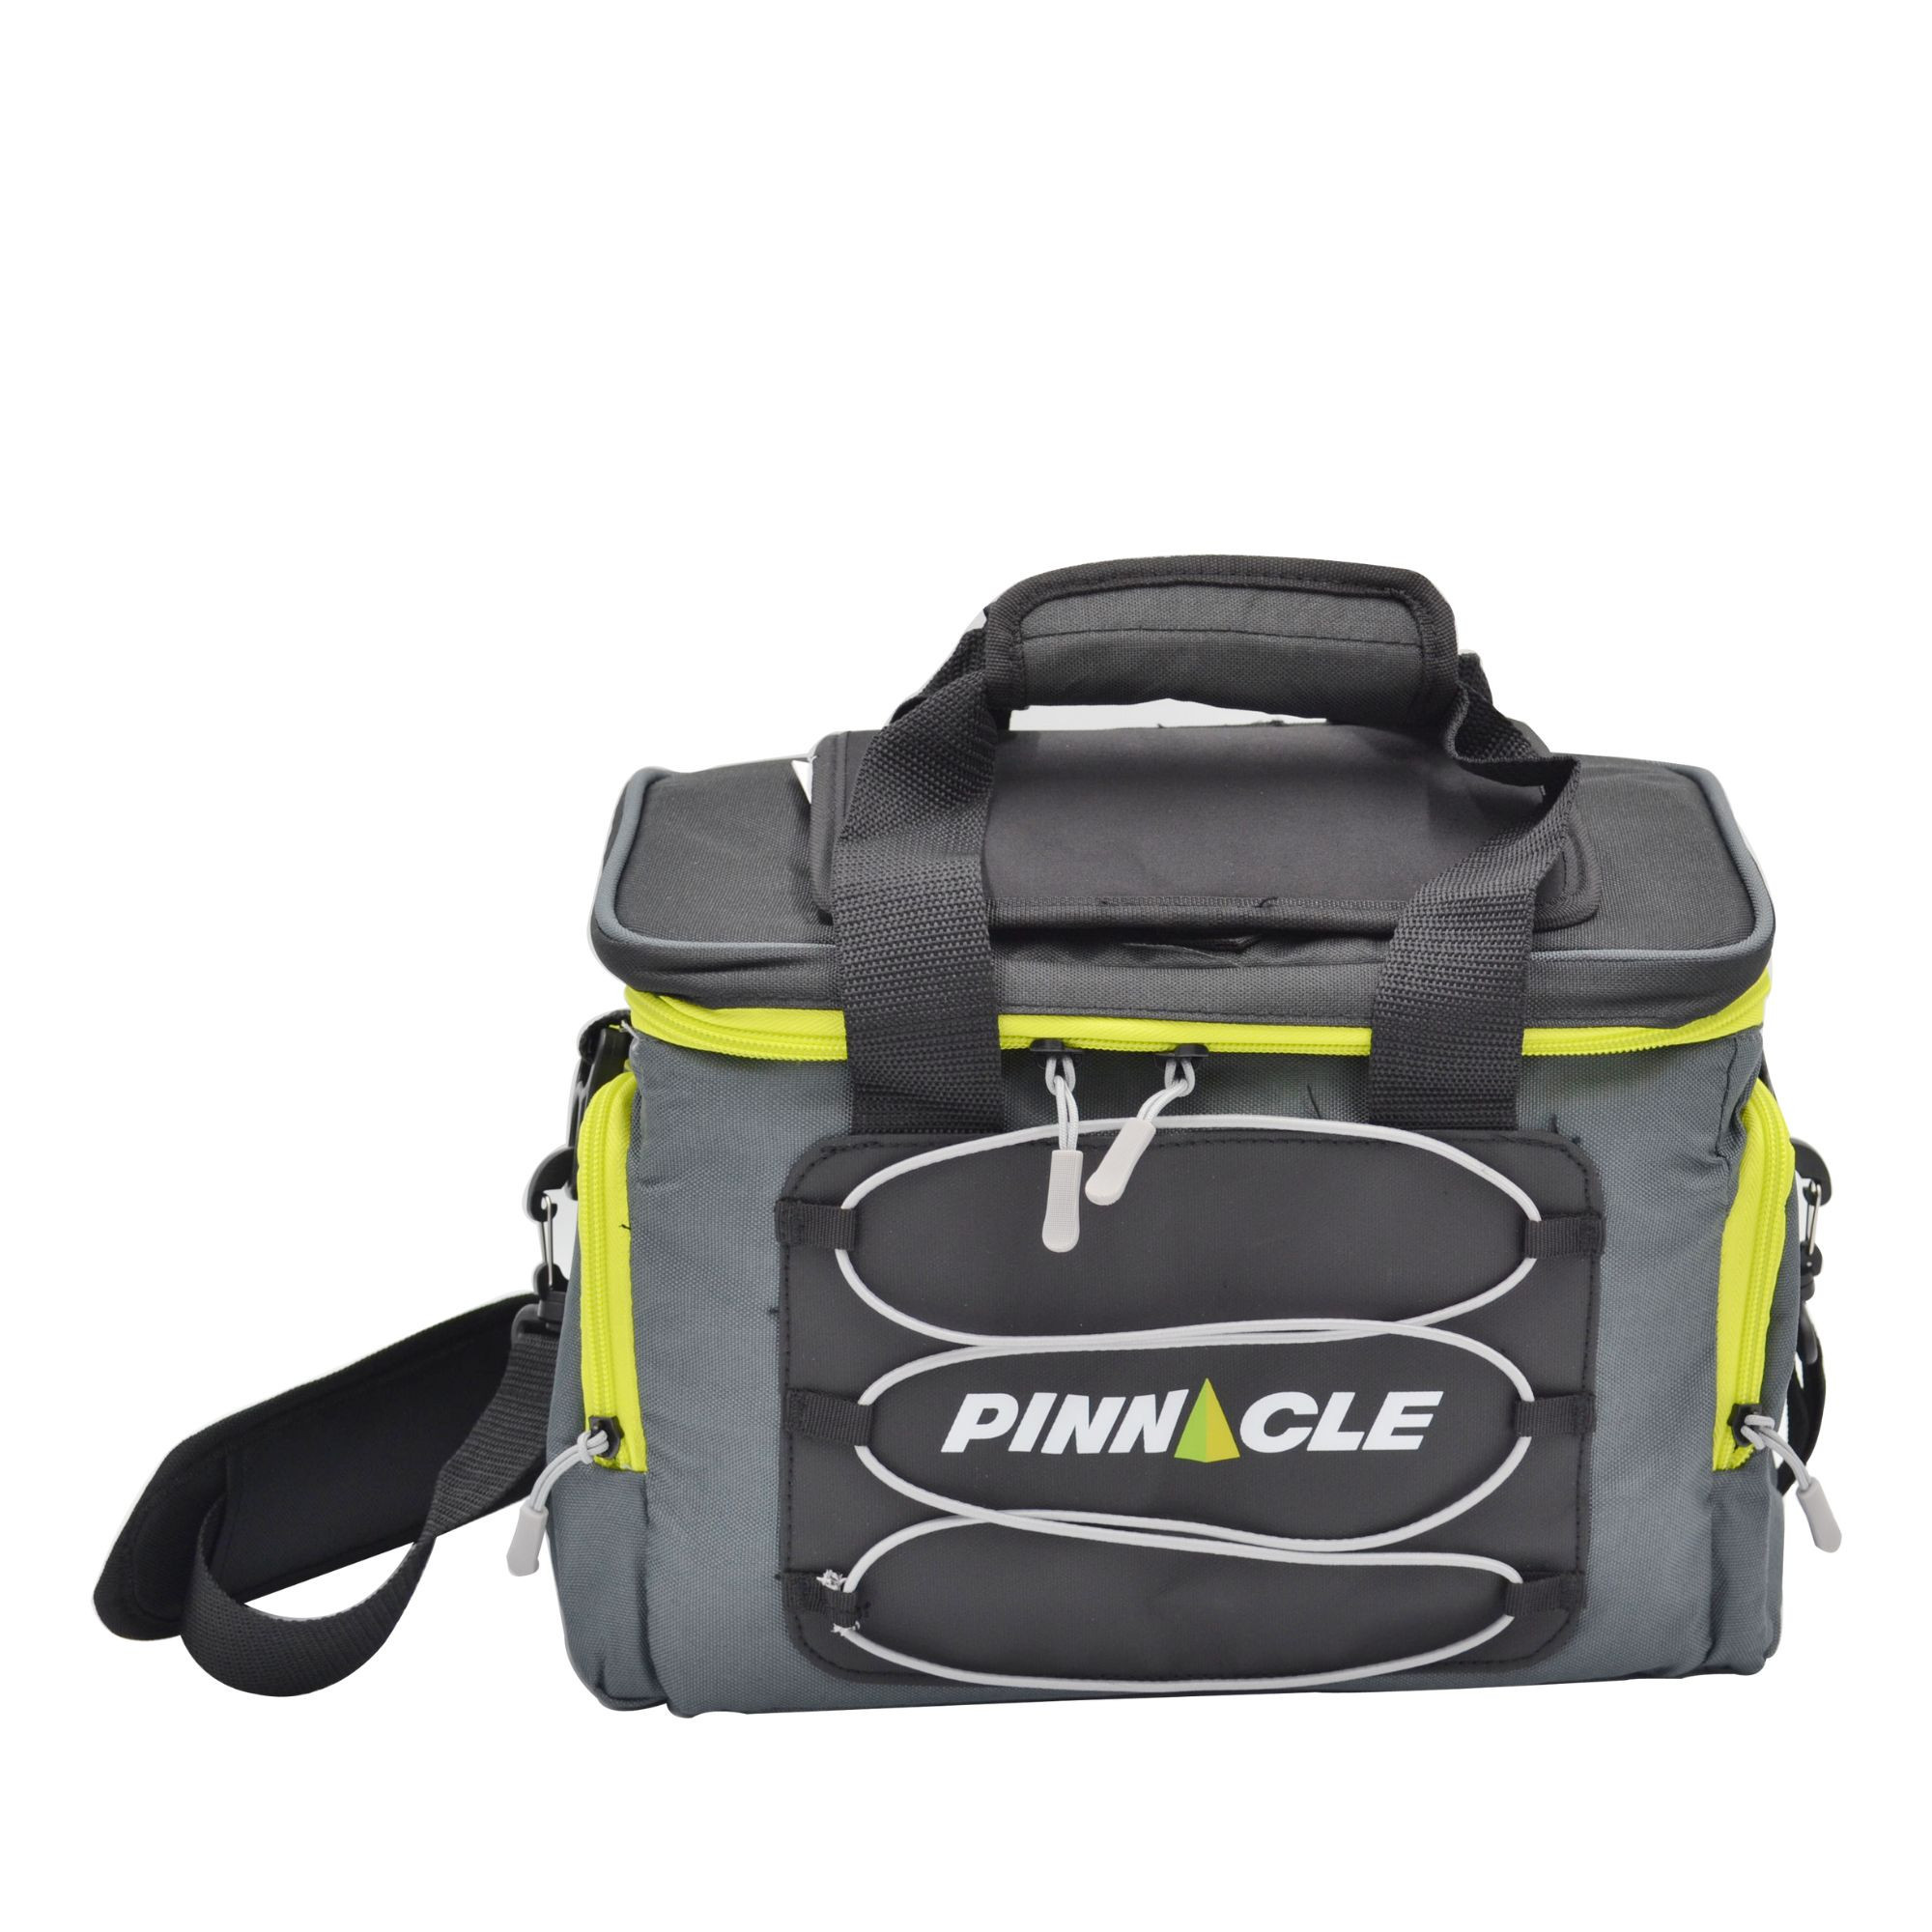 WINSOR Cooler Bag 18.5L/24 CANS